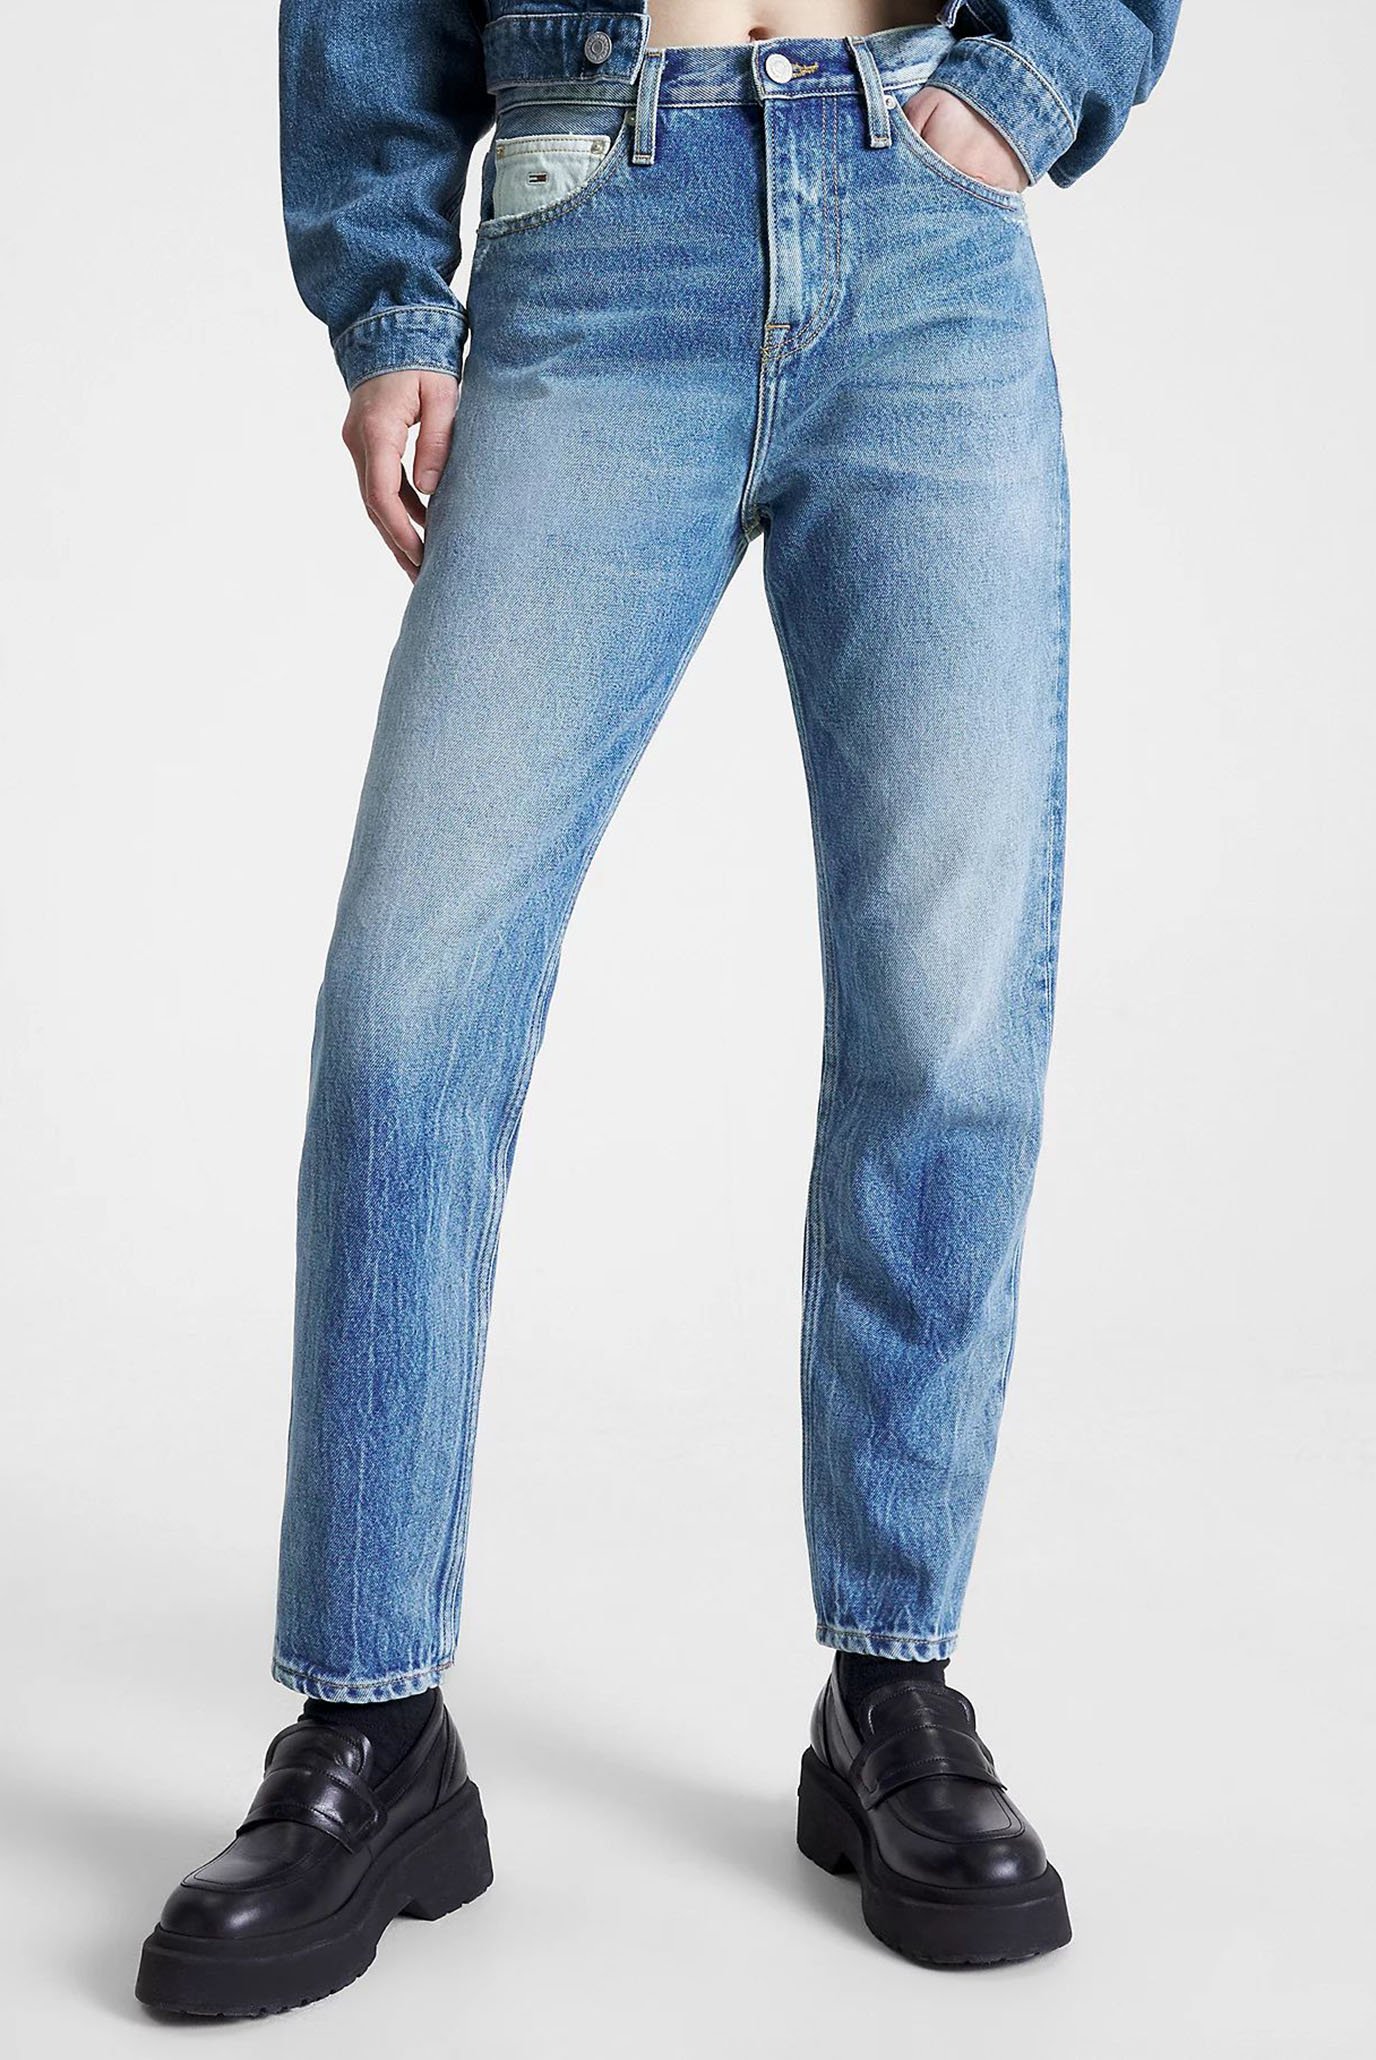 Жіночі сині джинси IZZIE HR SL ANK CG7037 1